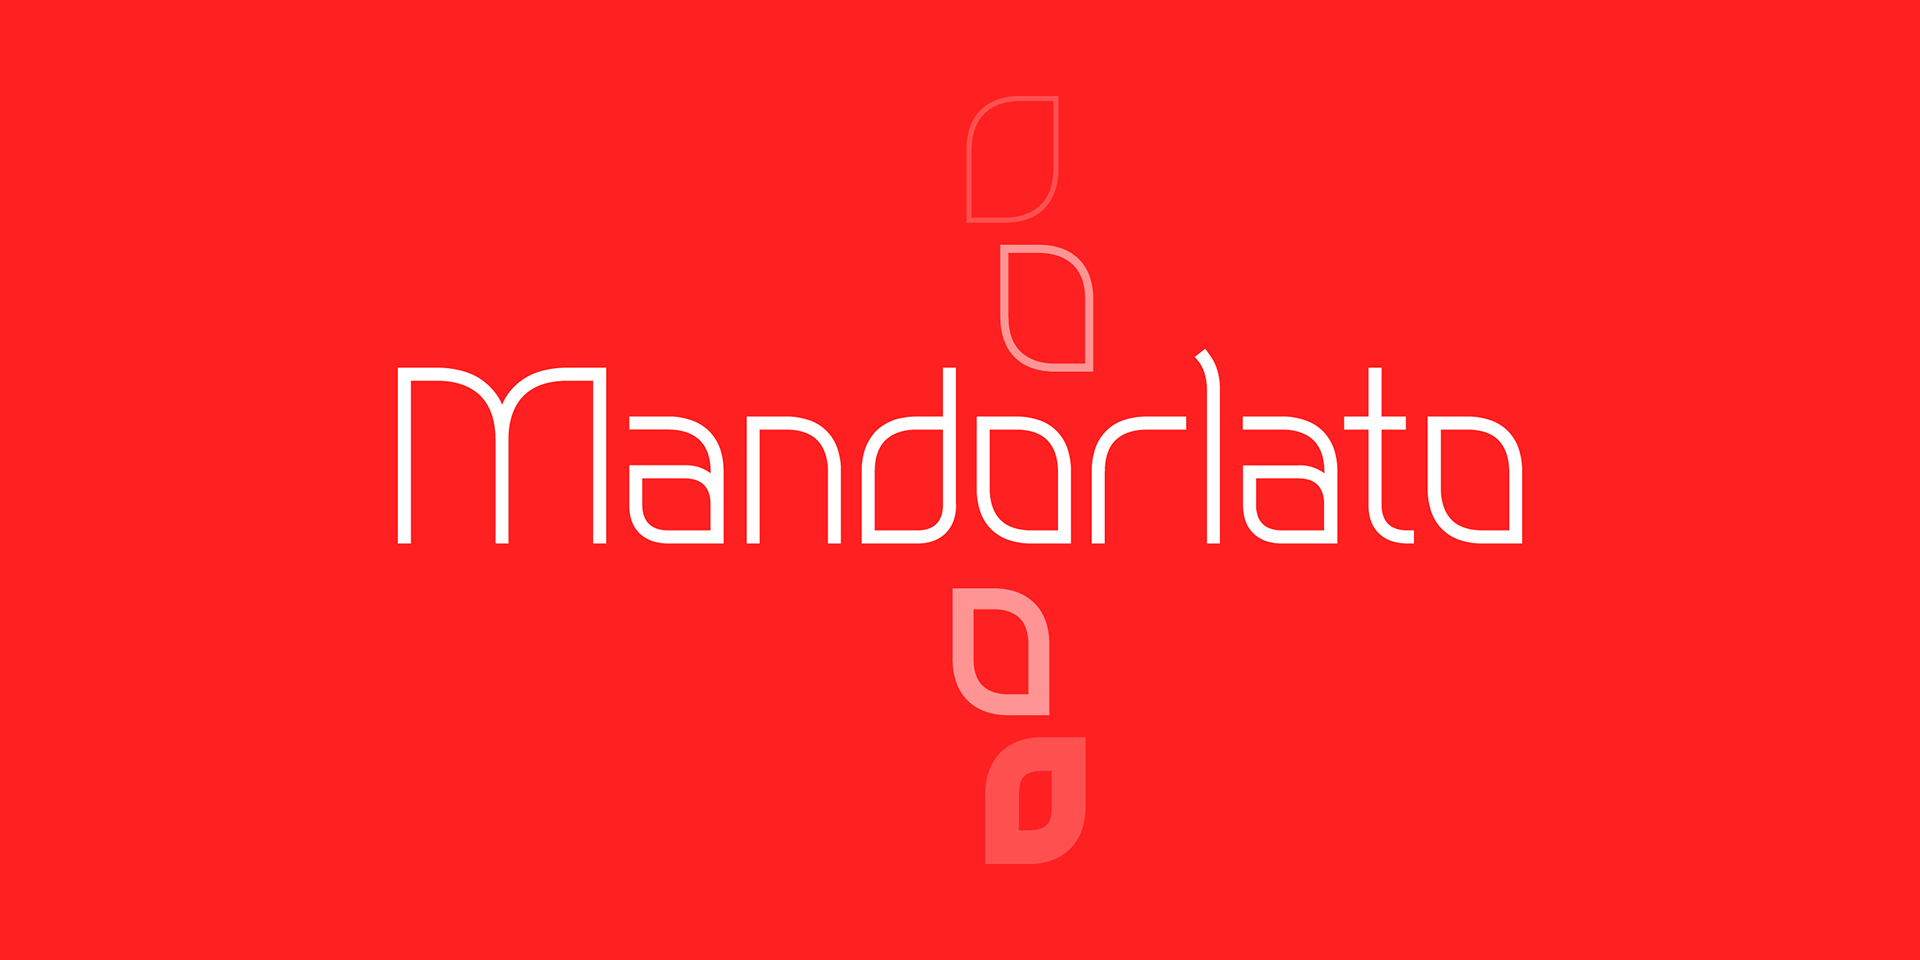 Font Mandorlato